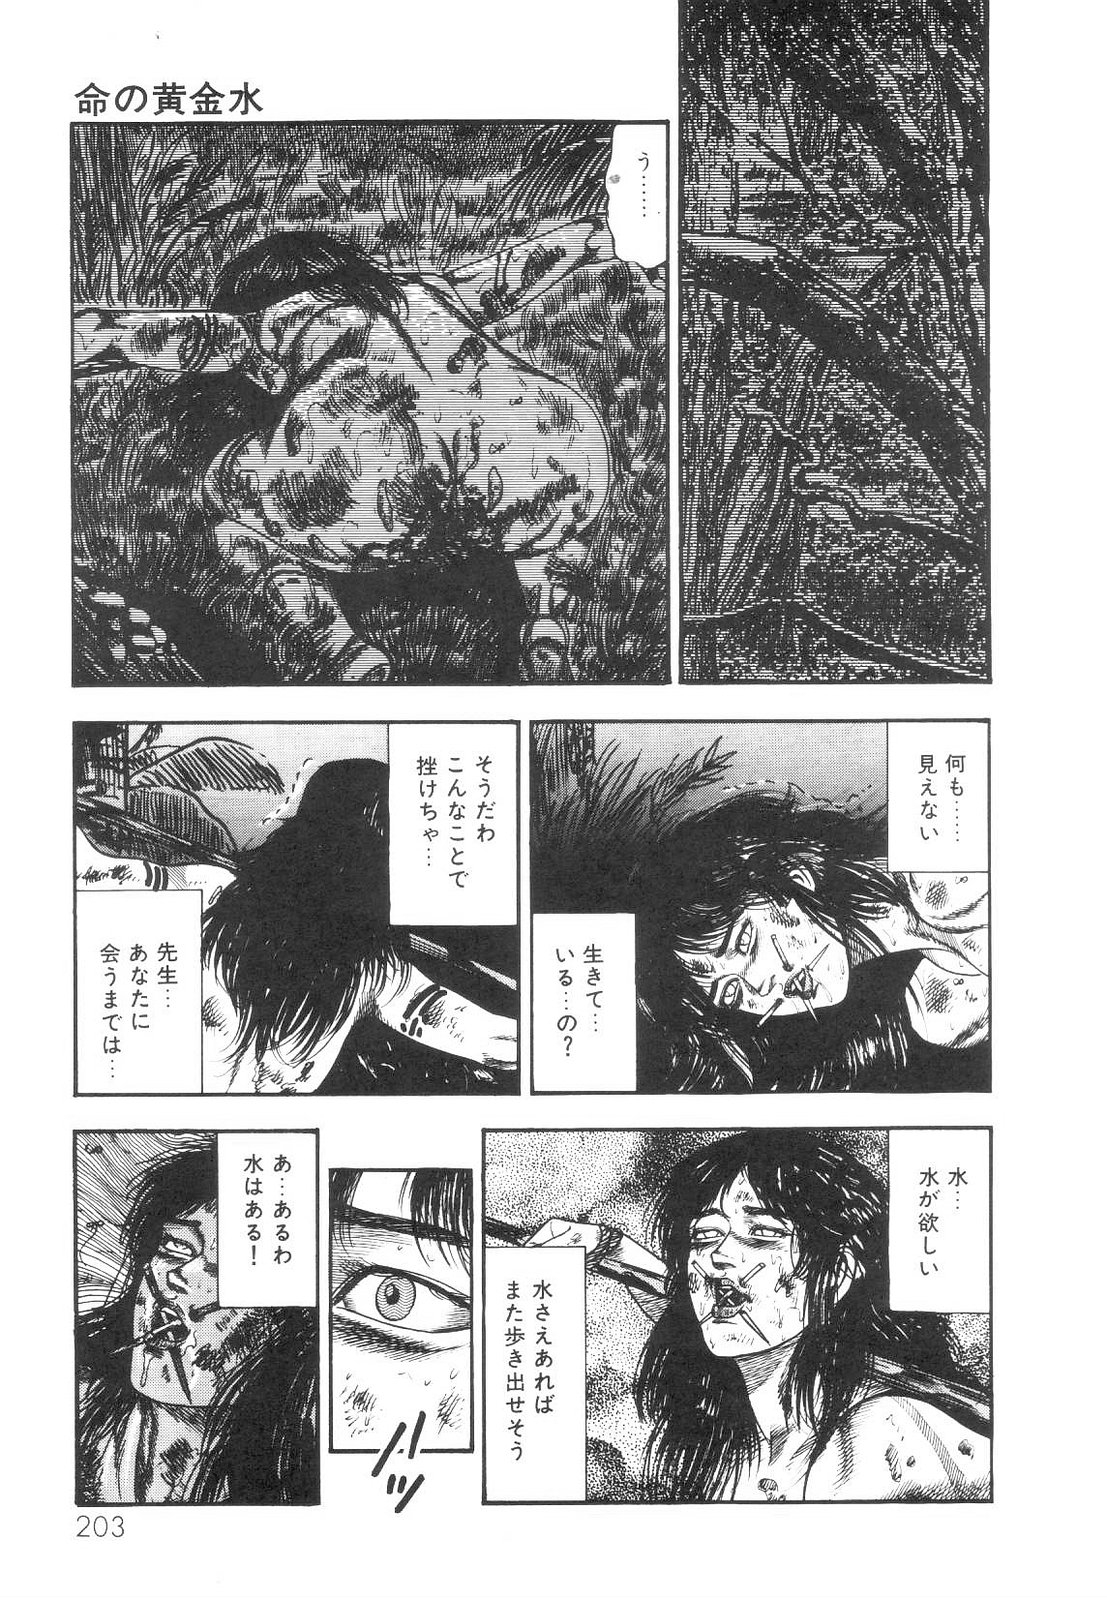 [Sanjou Tomomi] Shiro no Mokushiroku Vol. 1 - Sei Shojo Shion no Shou 203